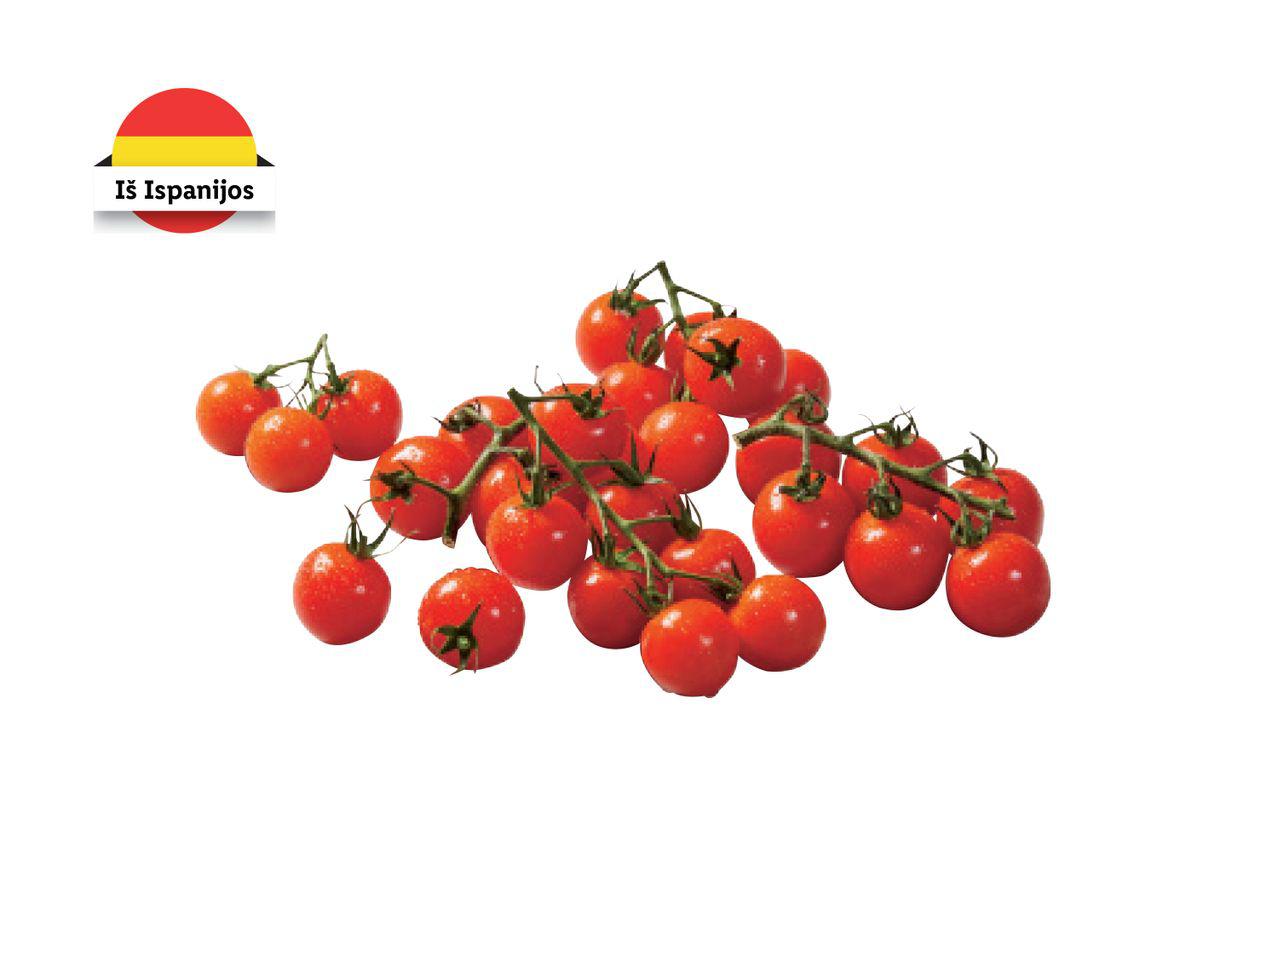 Vynuoginiai pomidorai su šakelėmis „Premium“